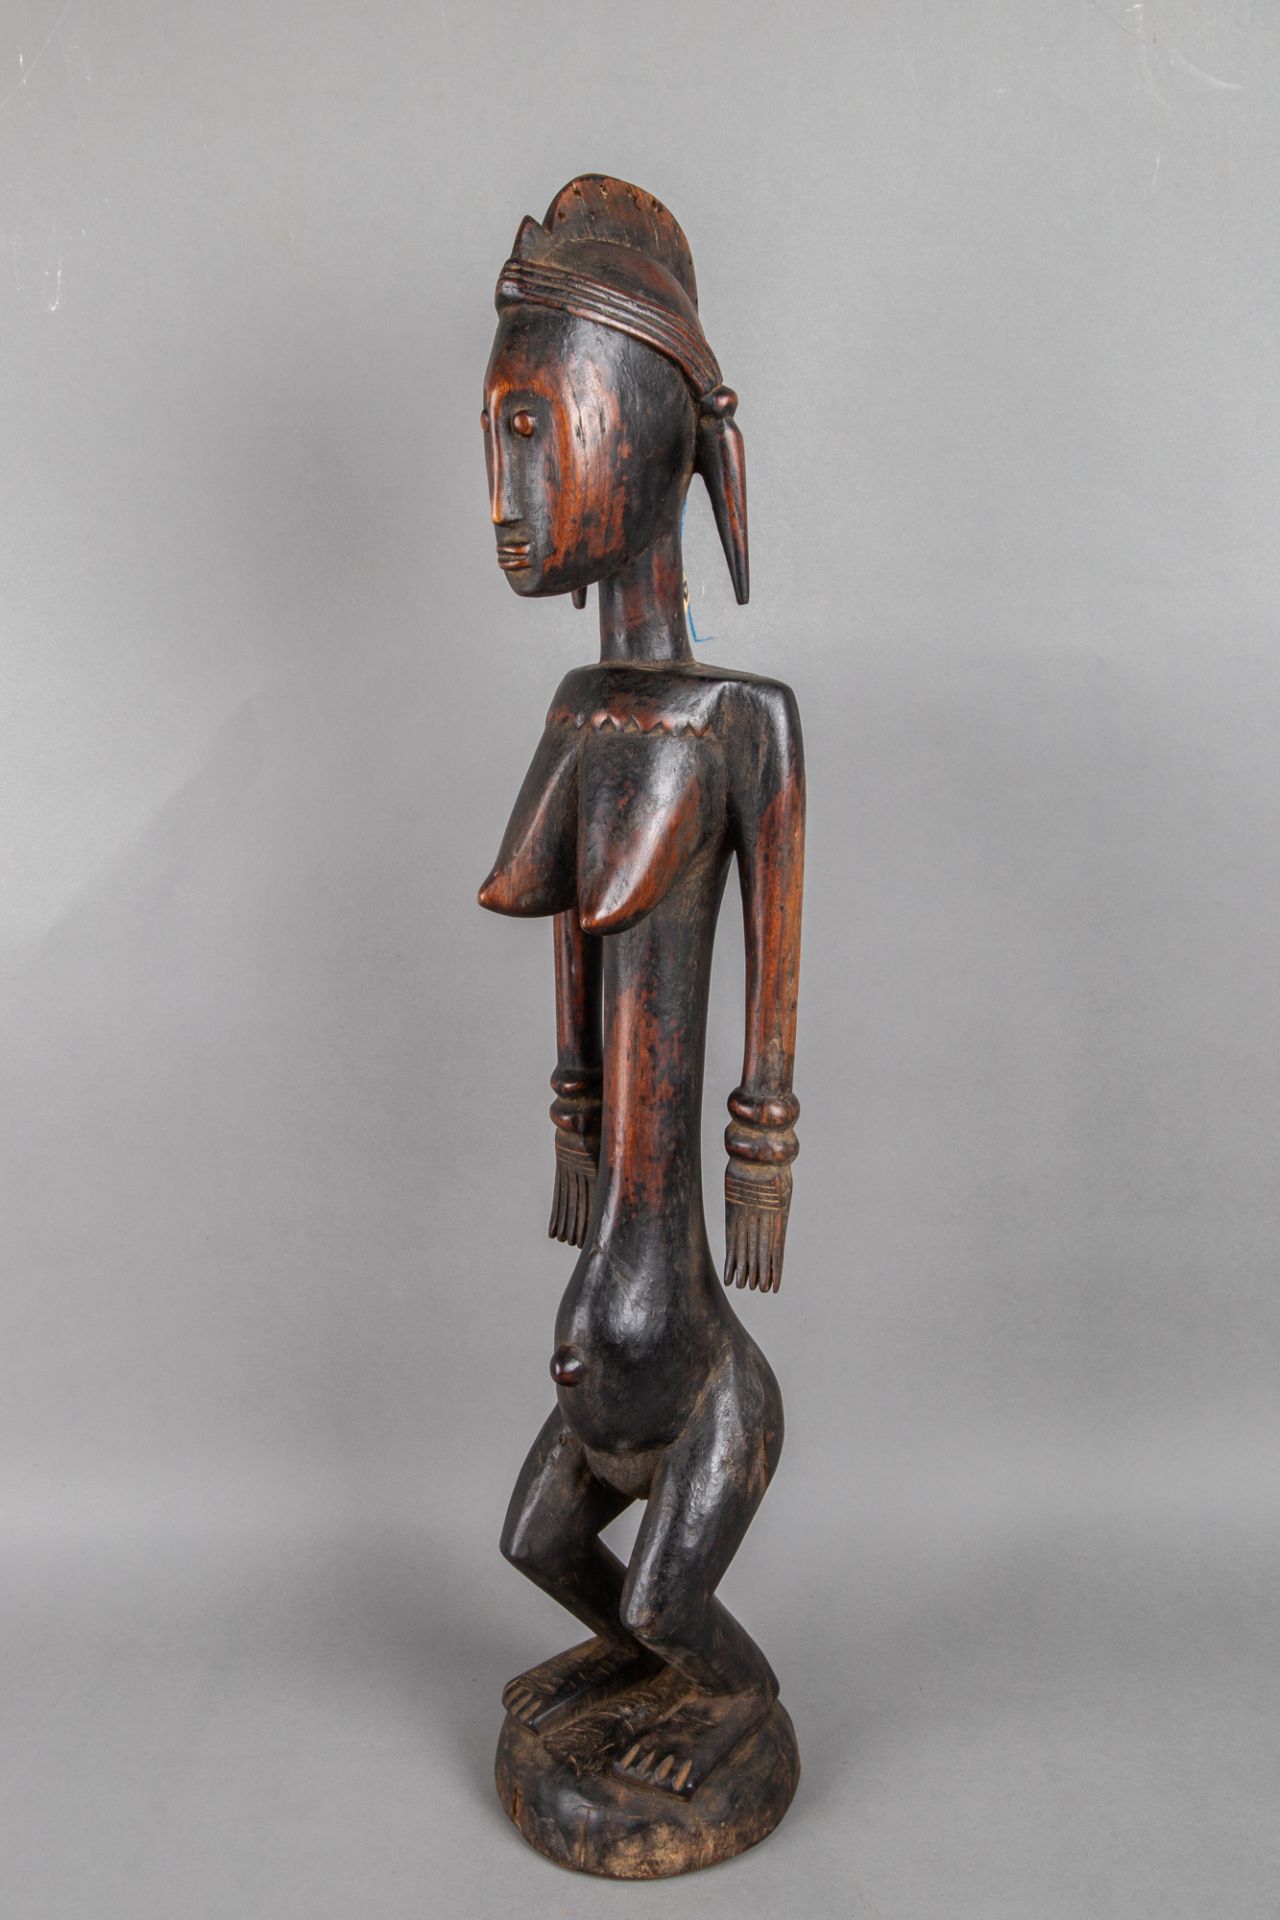 Stehende weibliche Figur 'jo nyeleni', Holz, Bamana, Mali - Image 3 of 4